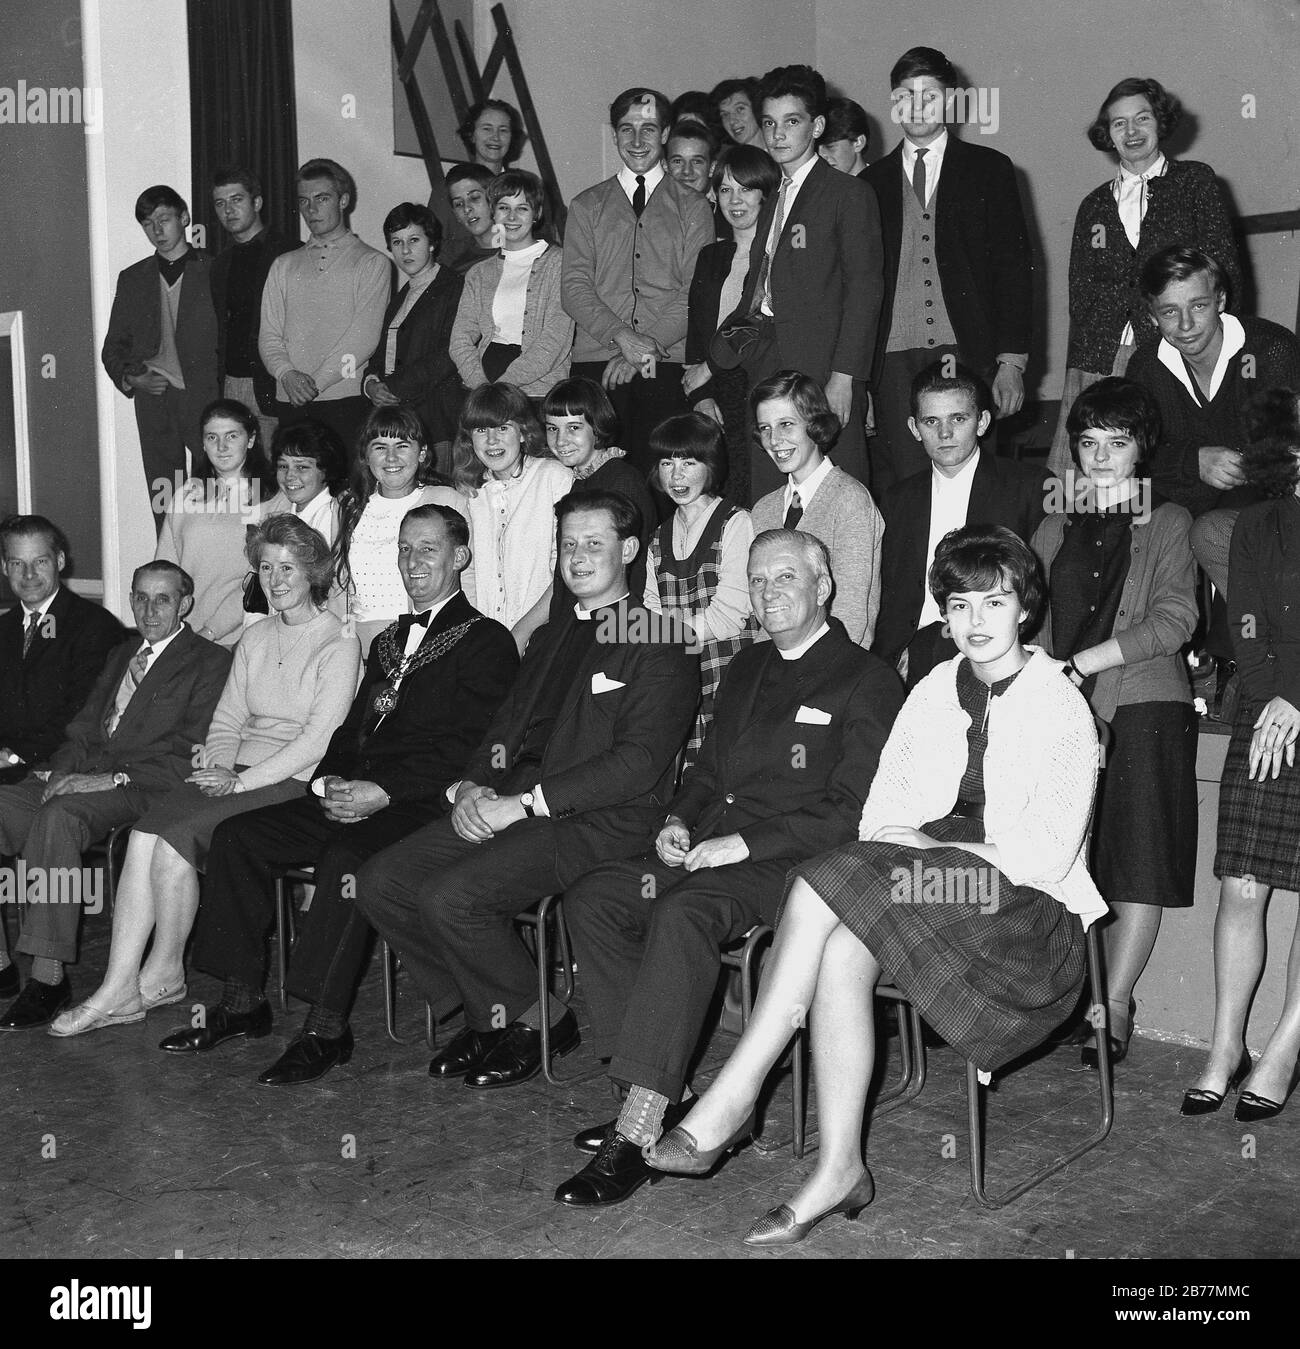 1960, histórico, grupo de jóvenes excitados en un salón de pueblo con una imagen de invitados distinguidos incluyendo el alcalde y los sacerdotes locales, Inglaterra, Reino Unido. Foto de stock